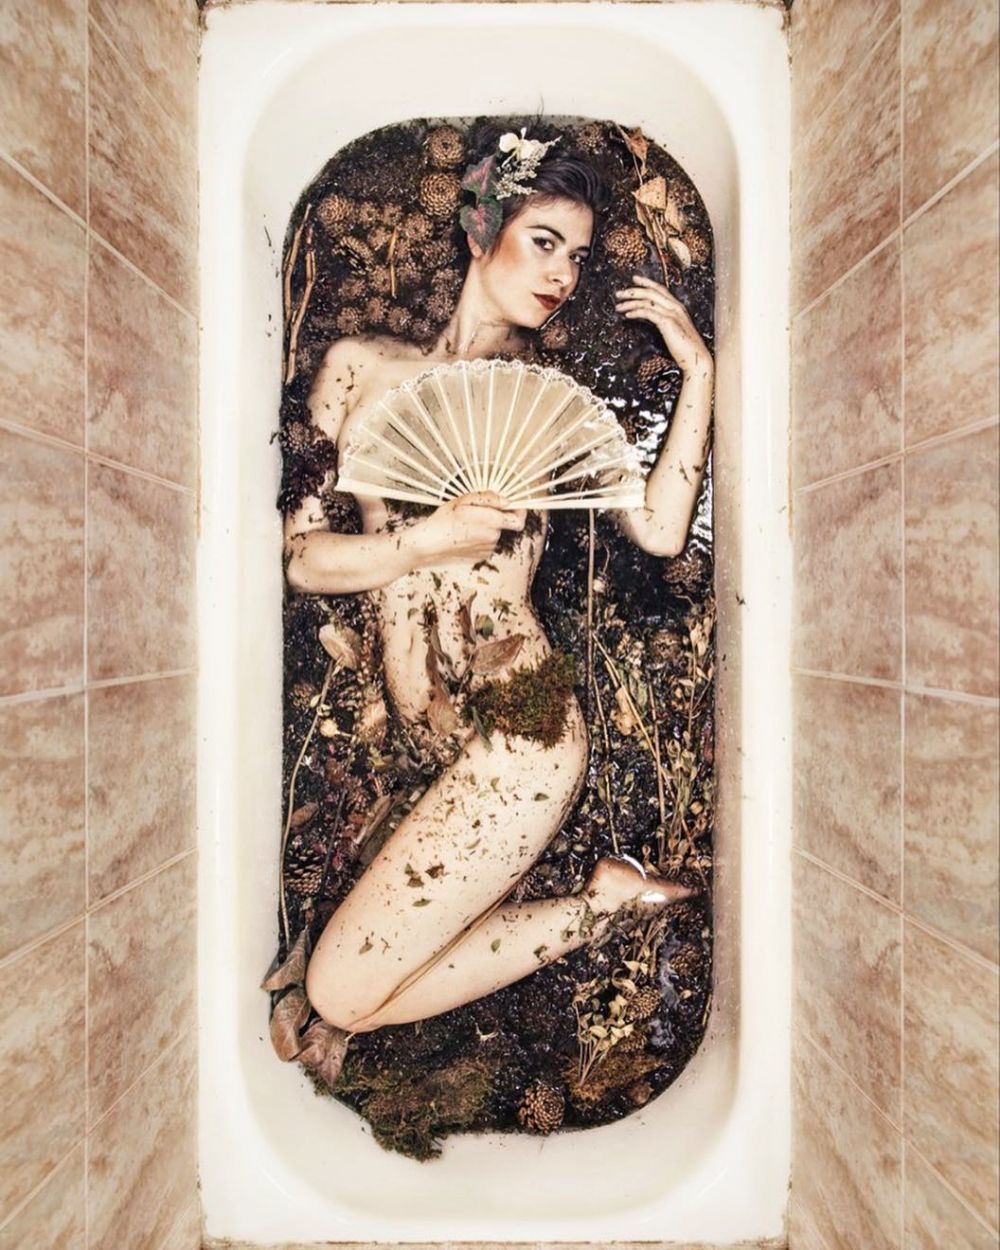 Cewek ini pemotretan di 100 bathtub berbeda, seni yang antimainstream